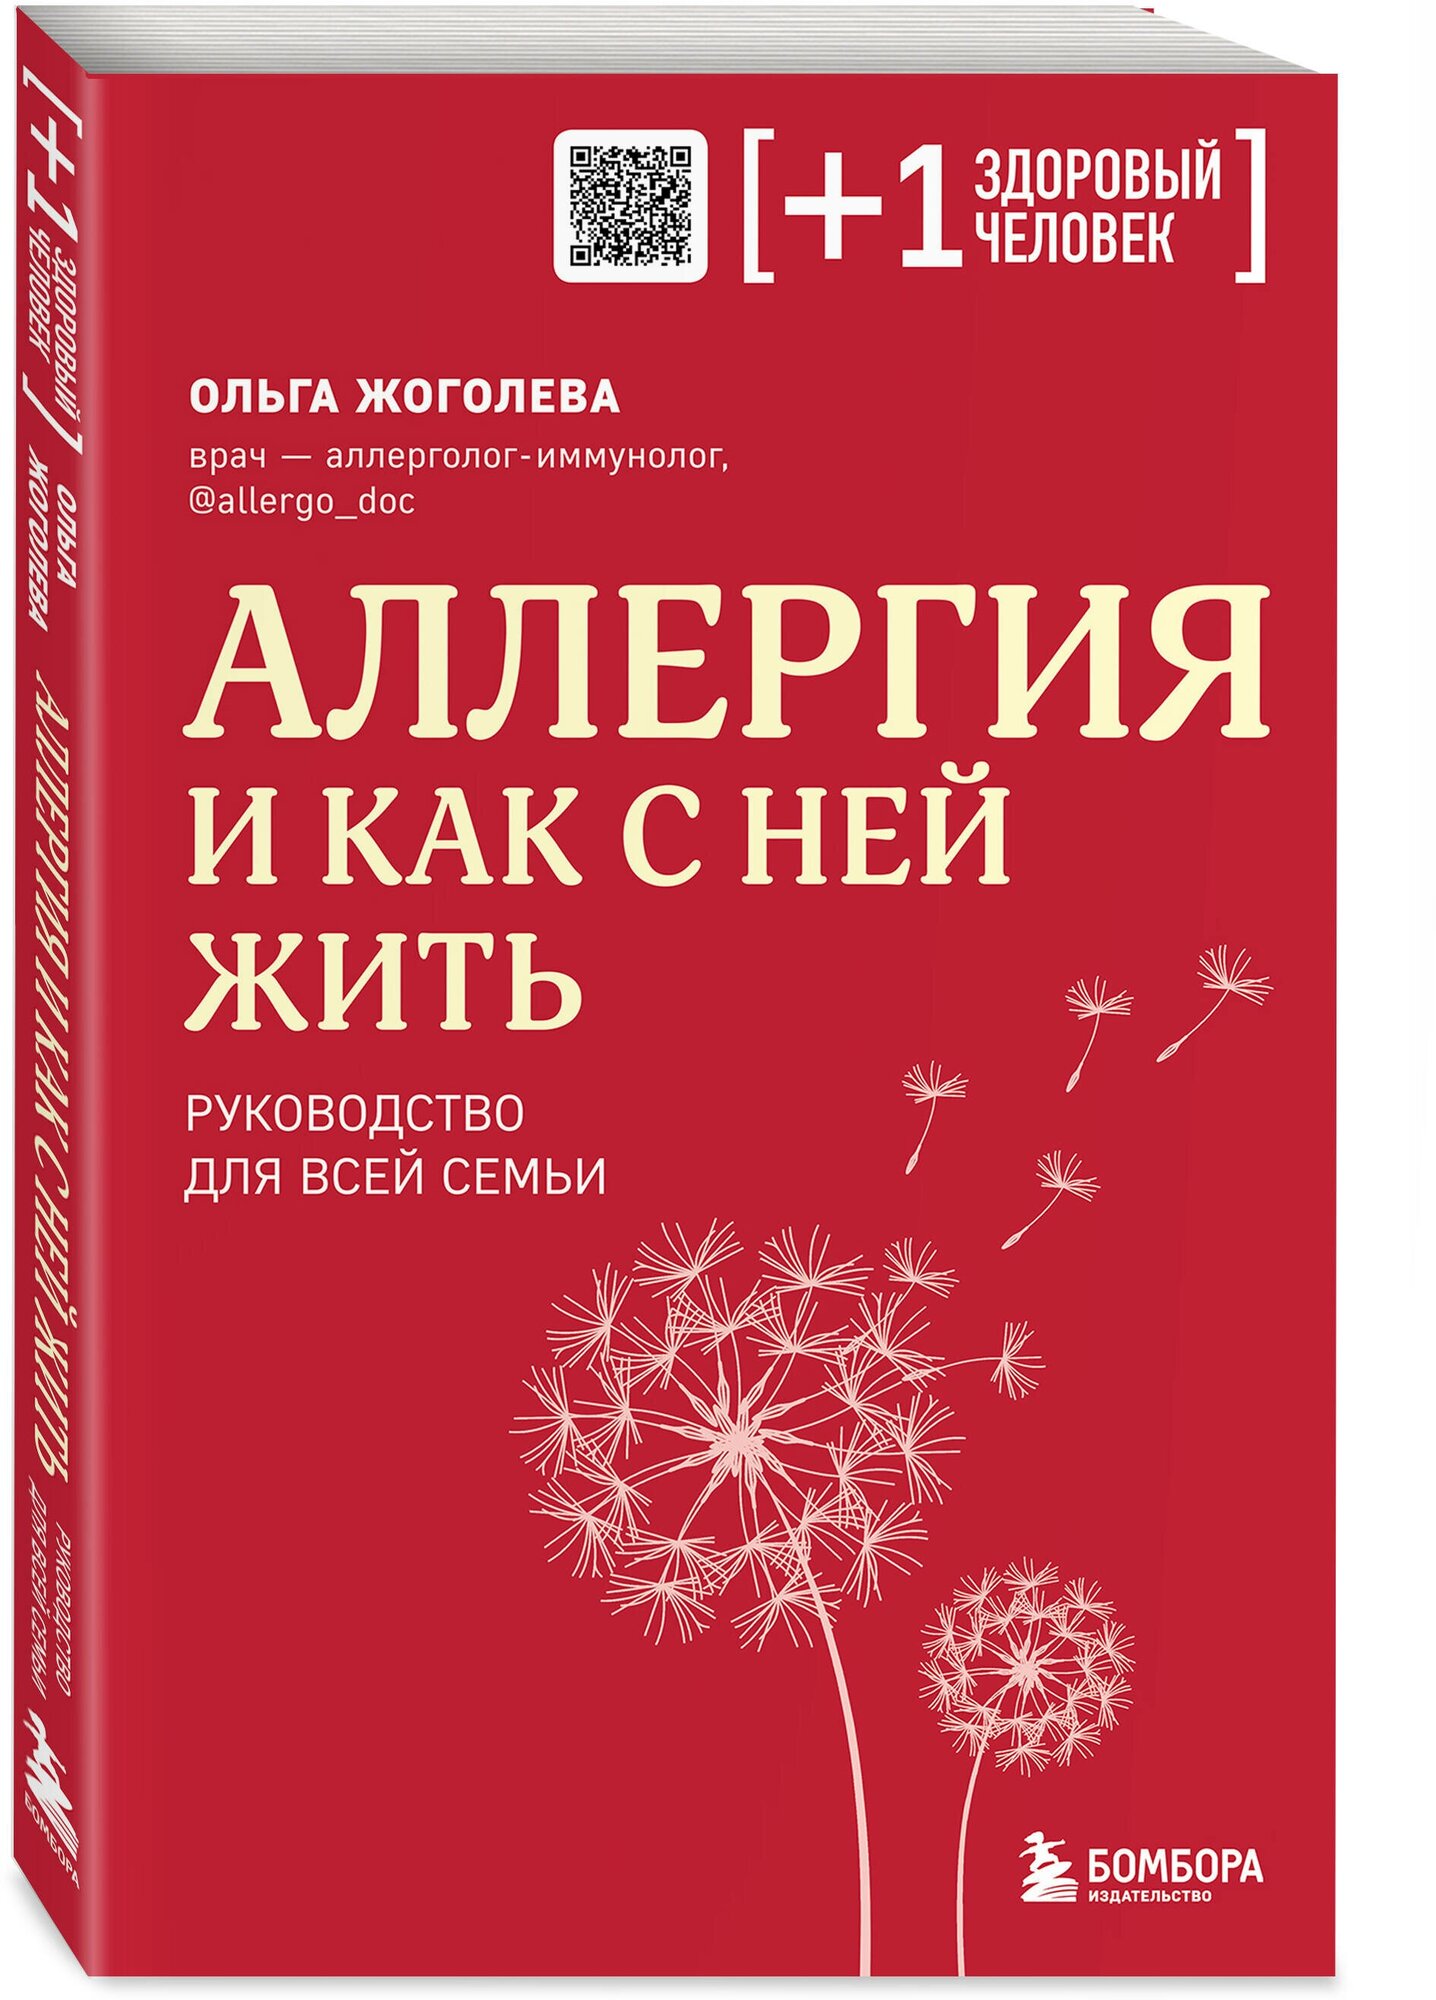 Аллергия и как с ней жить руководство для всей семьи Книга Жоголева Ольга 16+